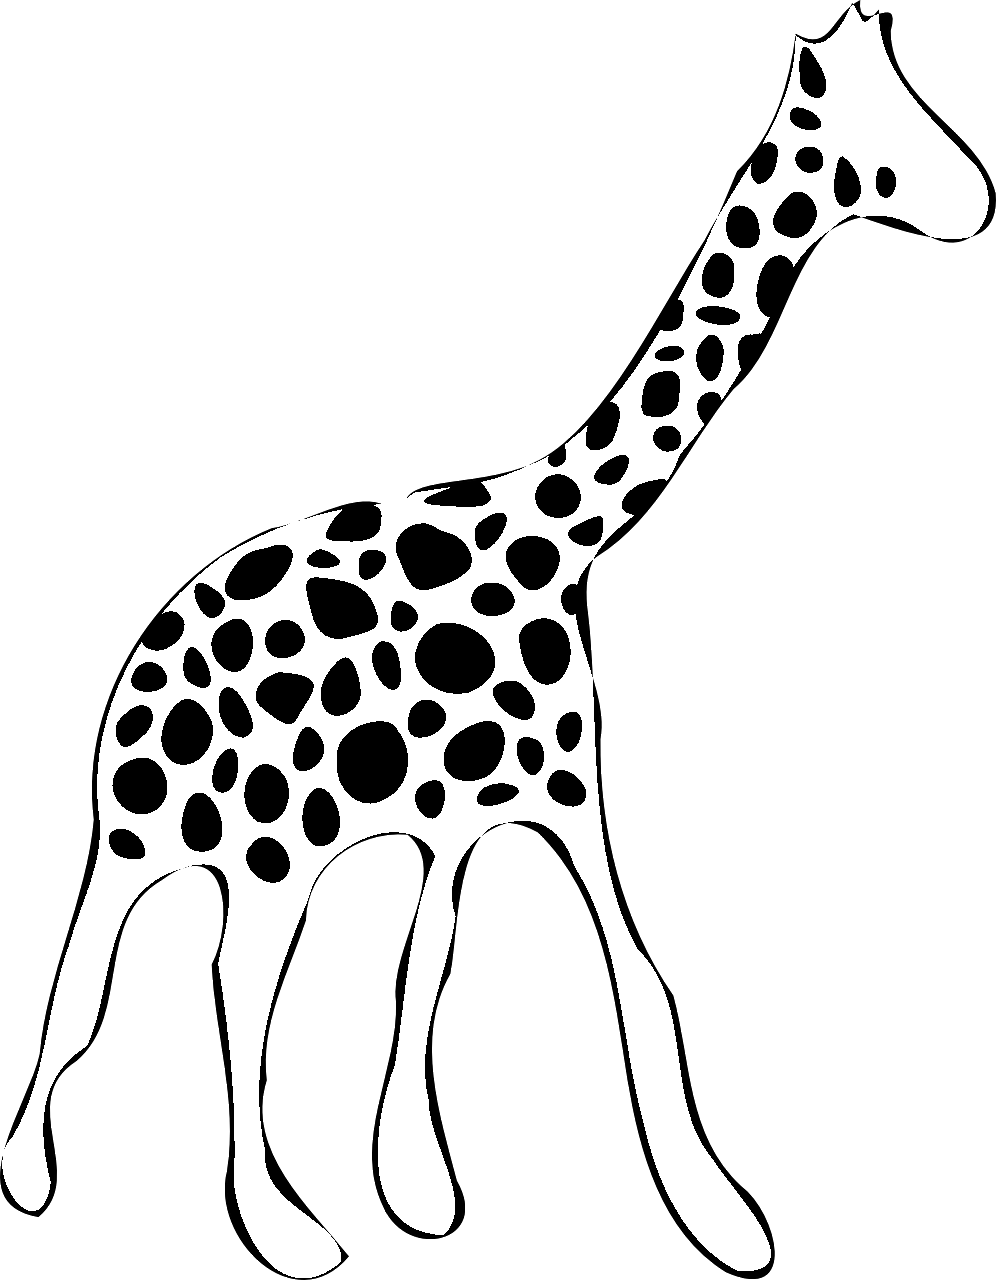 Disegno da colorare di giraffa stilizzata di profilo